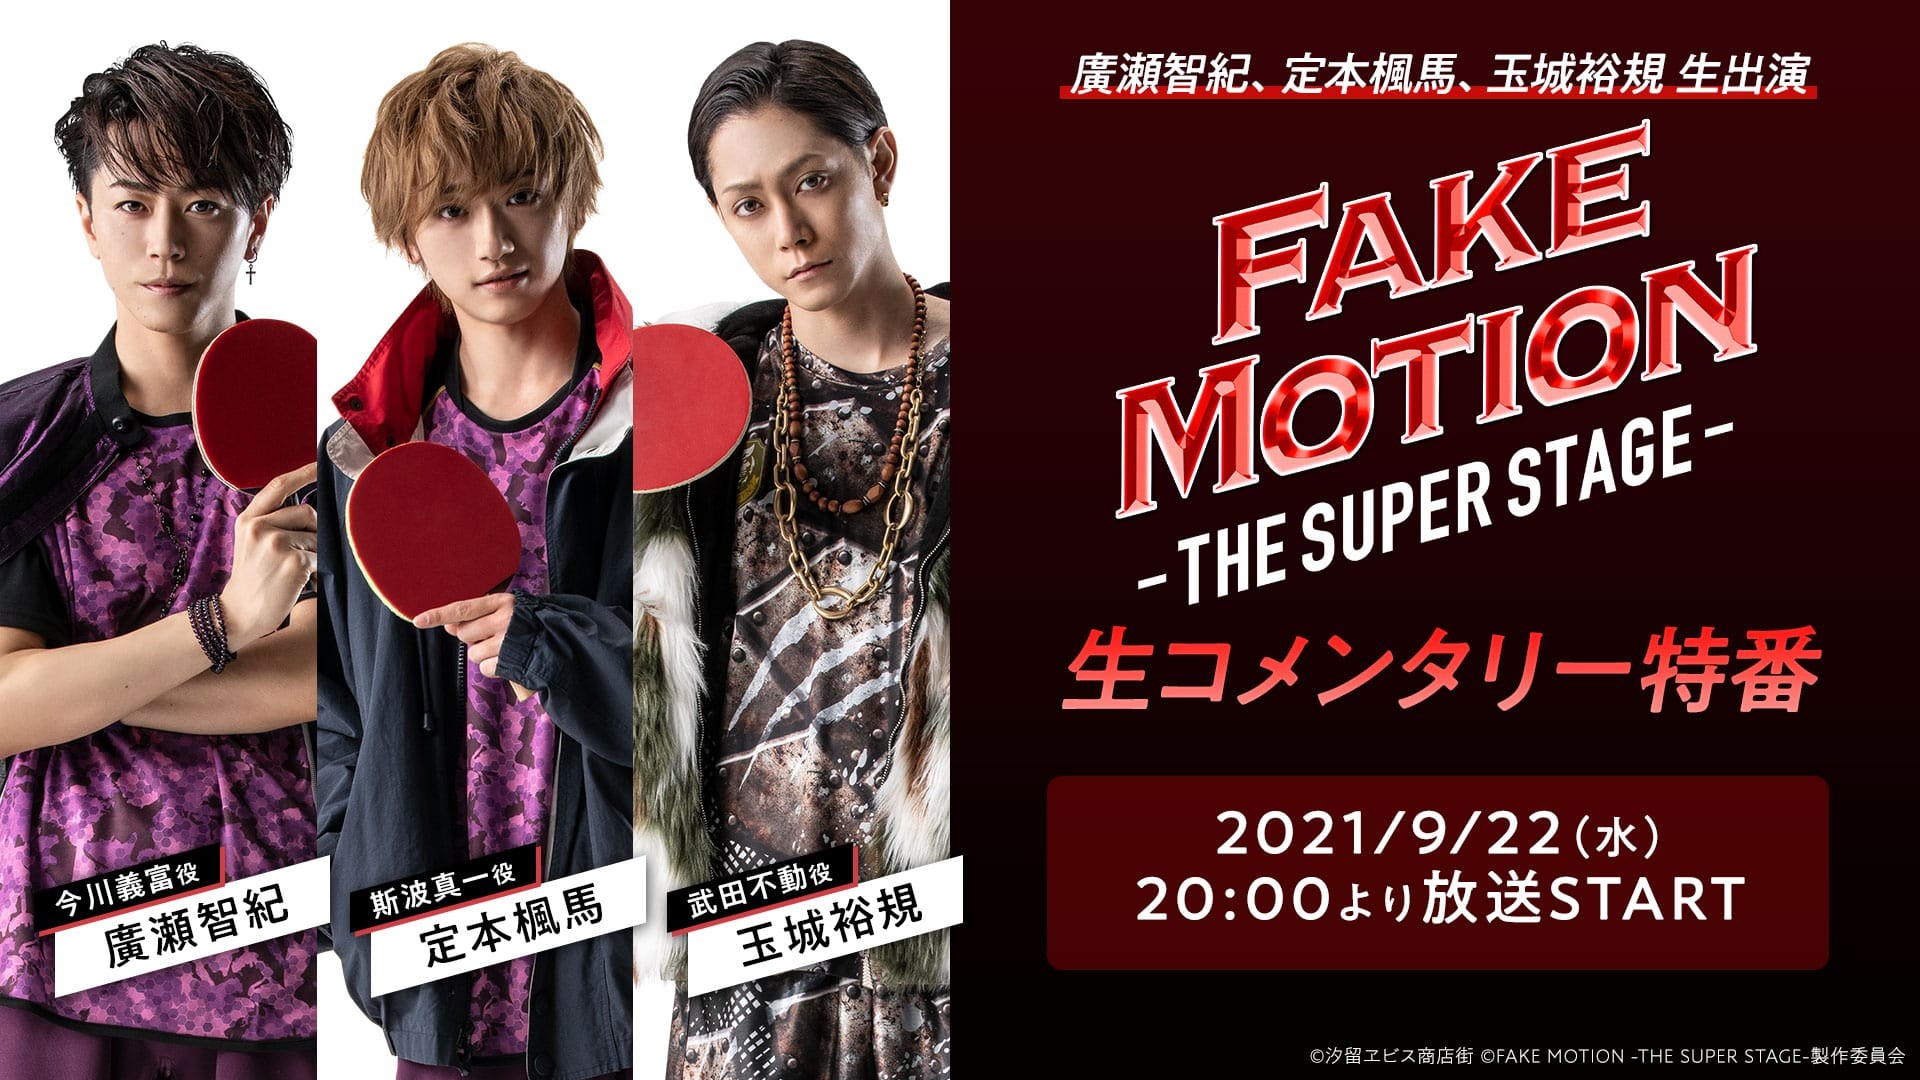 「FAKE MOTION -THE SUPER STAGE-」 <br>生コメンタリー特番